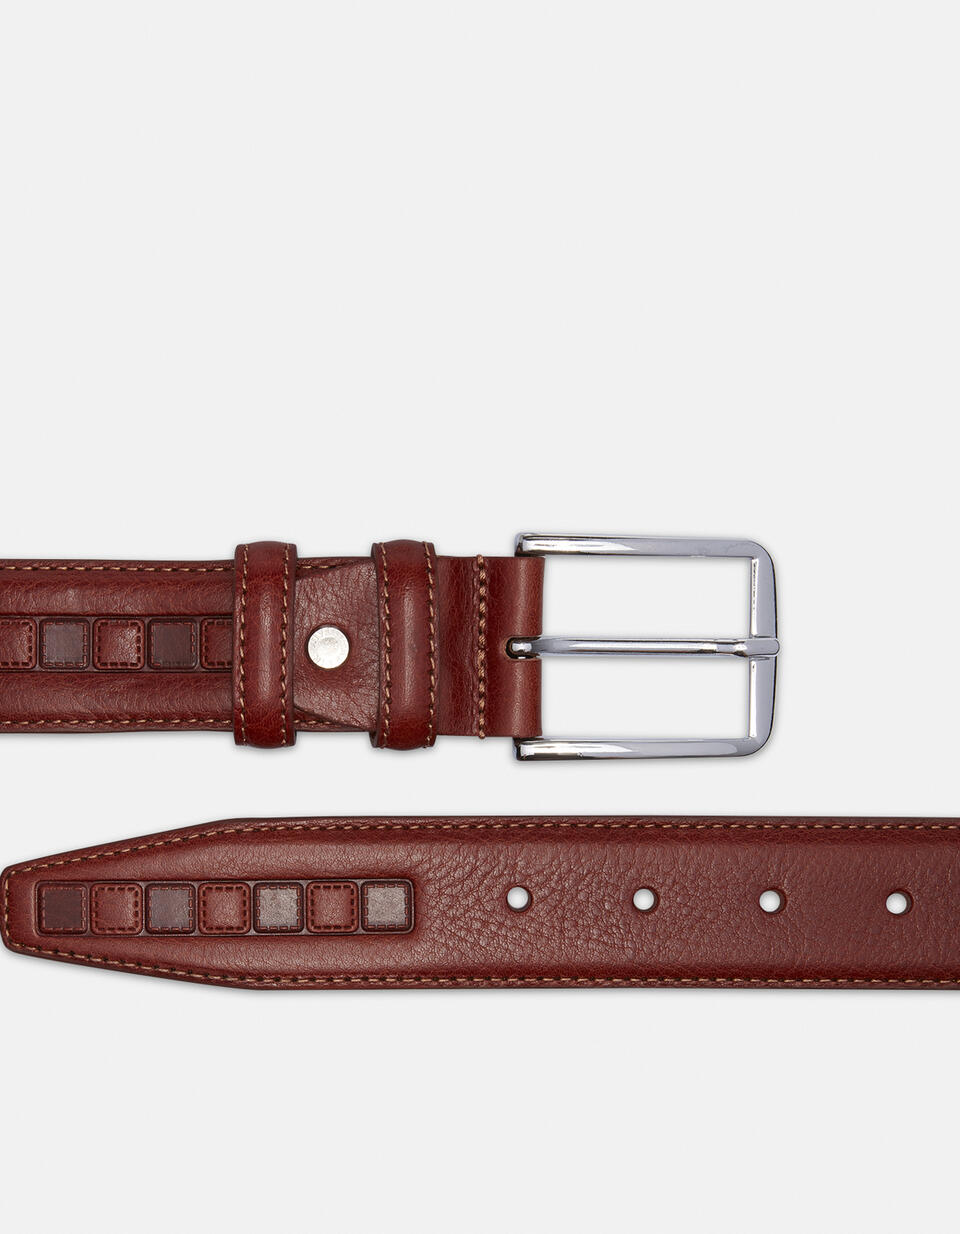 Belt leather working height 3.5 cm. - Men Belts | Belts MARRONE - Men Belts | BeltsCuoieria Fiorentina